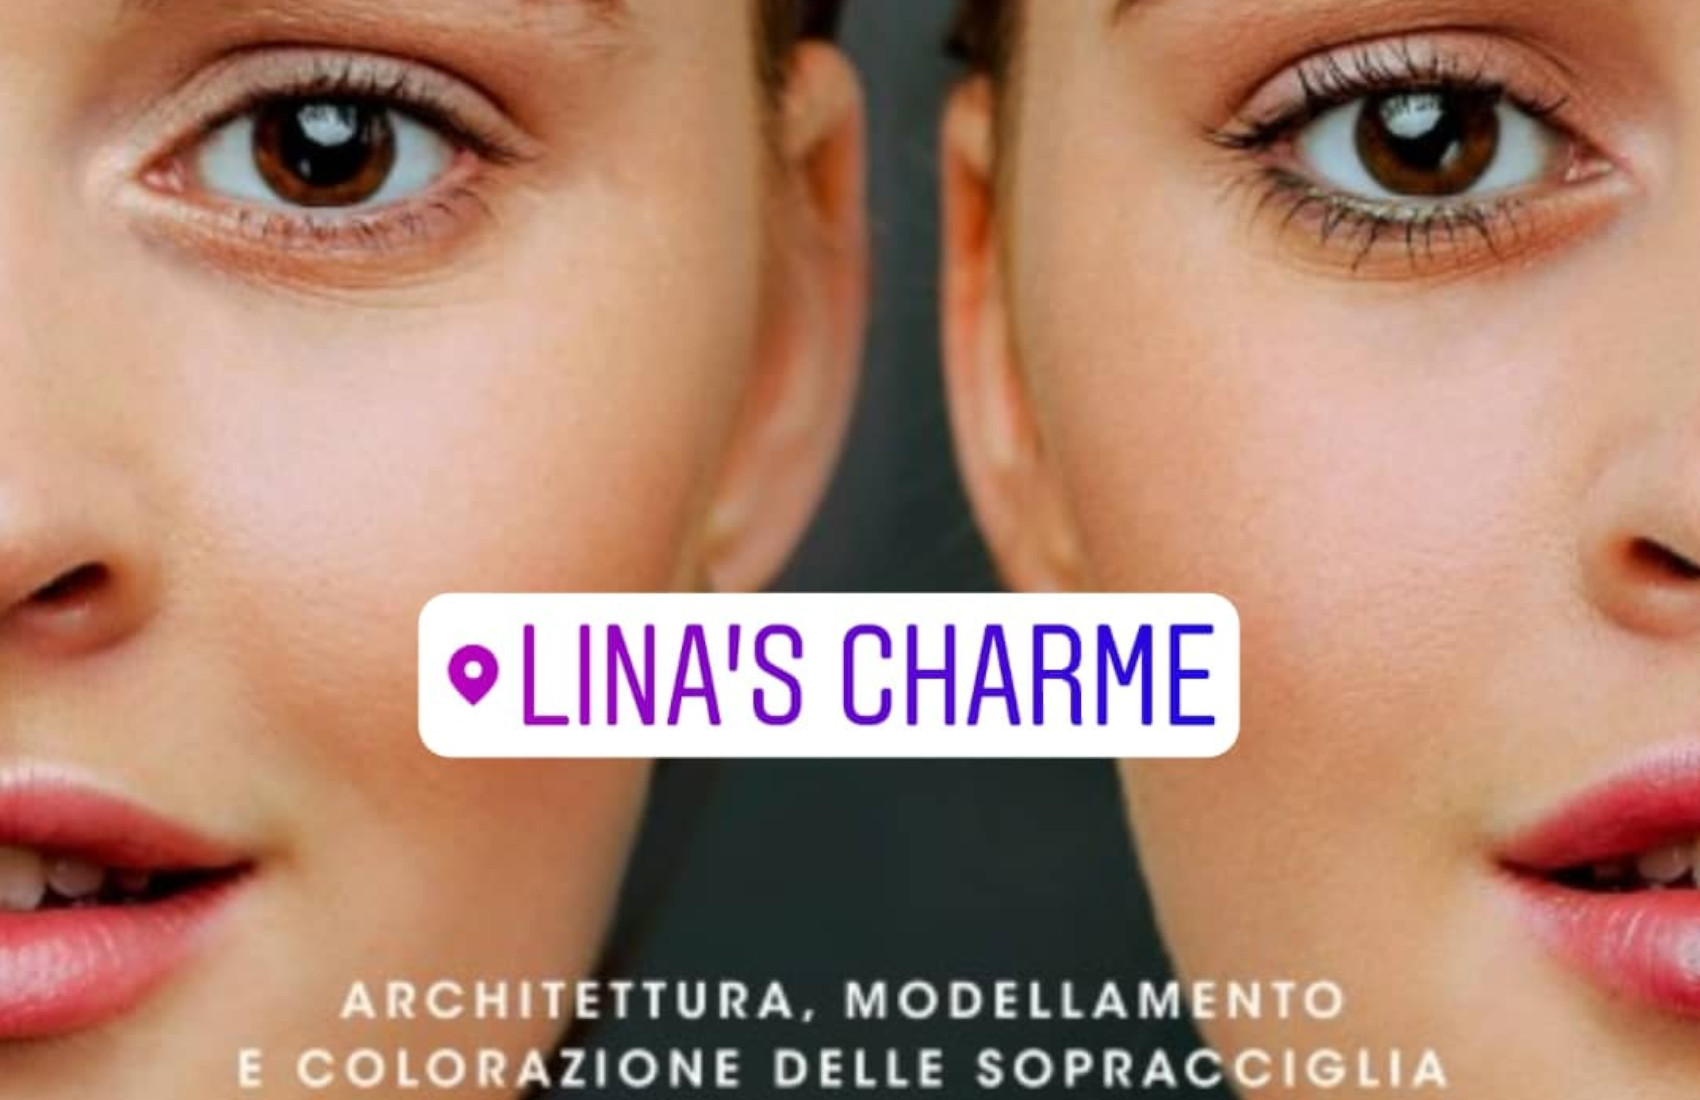 Lina's Charme Centro Estetico - Udine